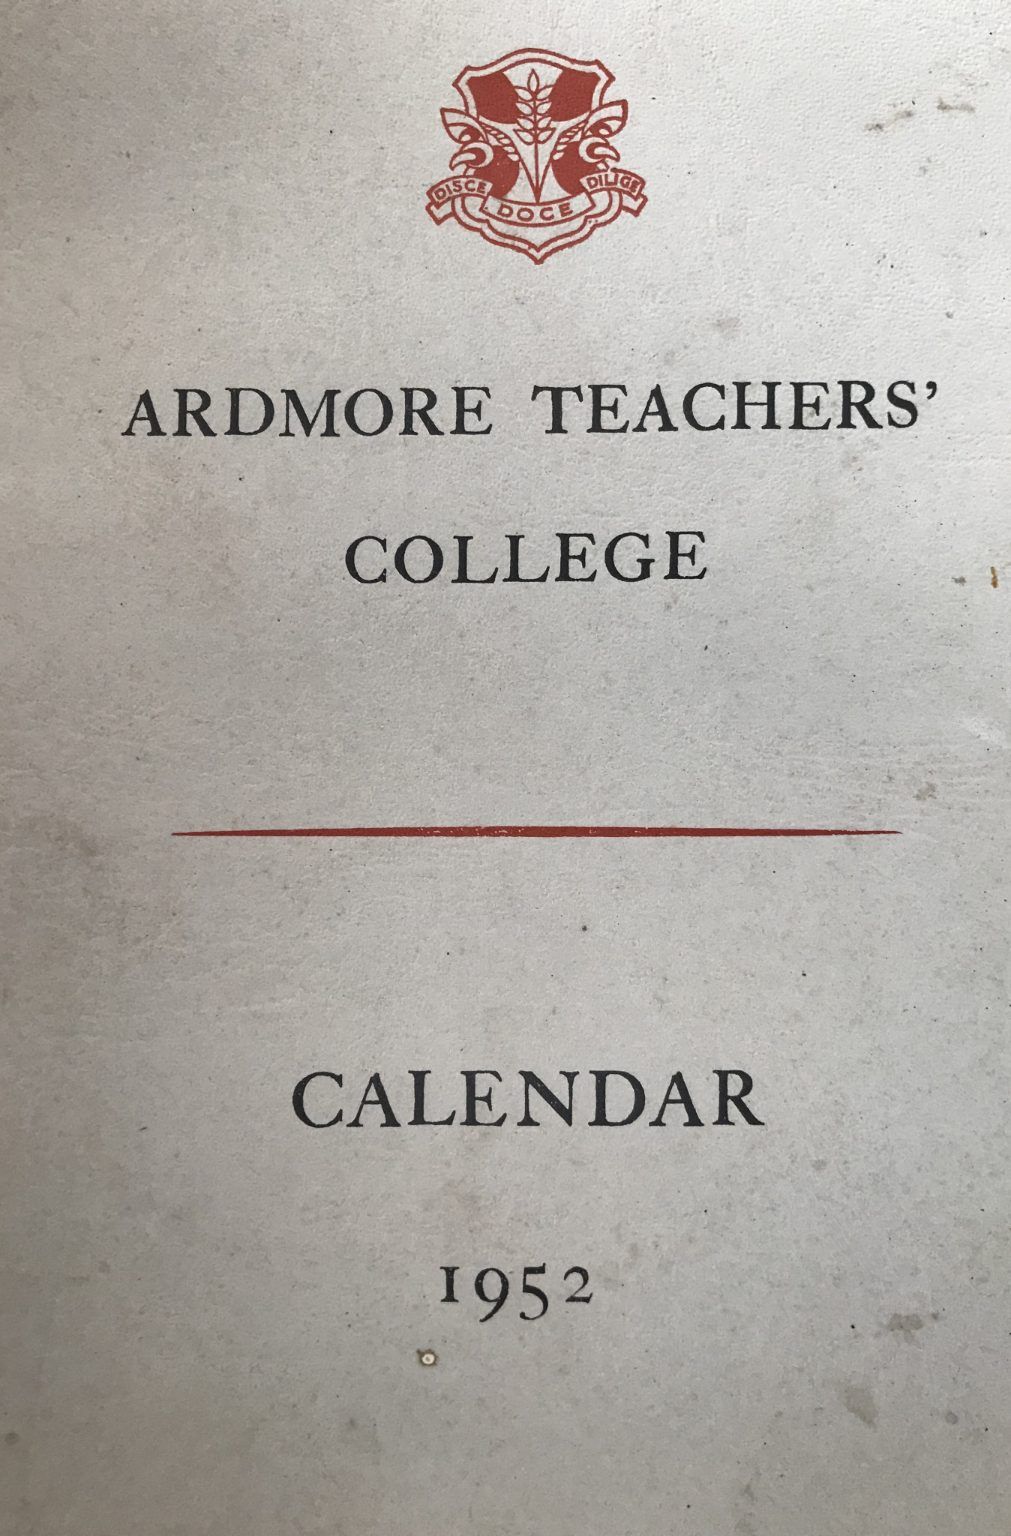 ARDMORE TEACHERS COLLEGE: Calendar 1952